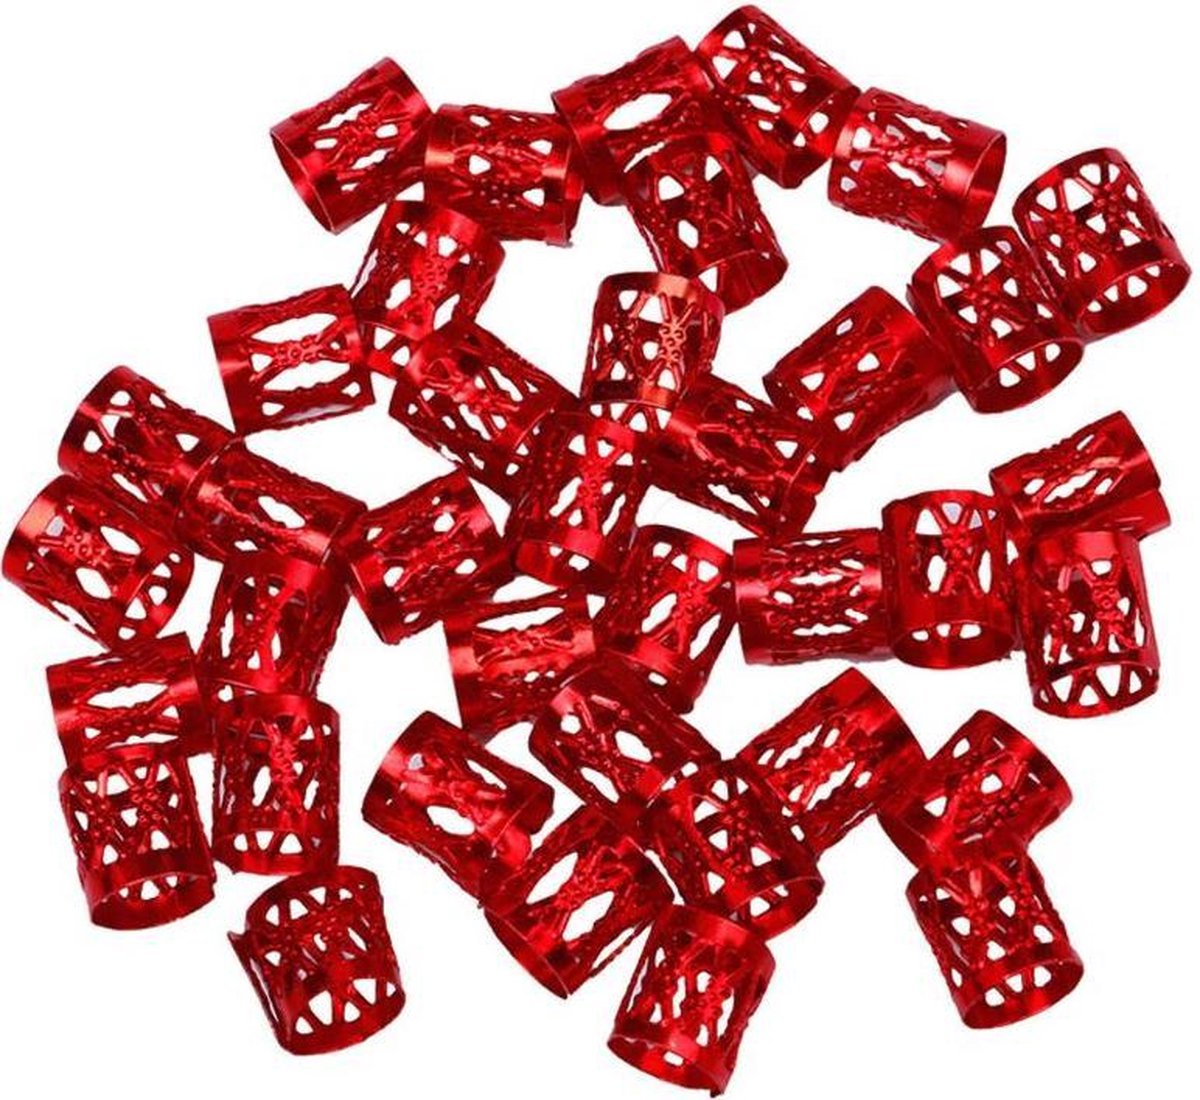 Beads for Braids - Dreadlock Haar Ringen - Extension Kralen - 25 stuks - Rood